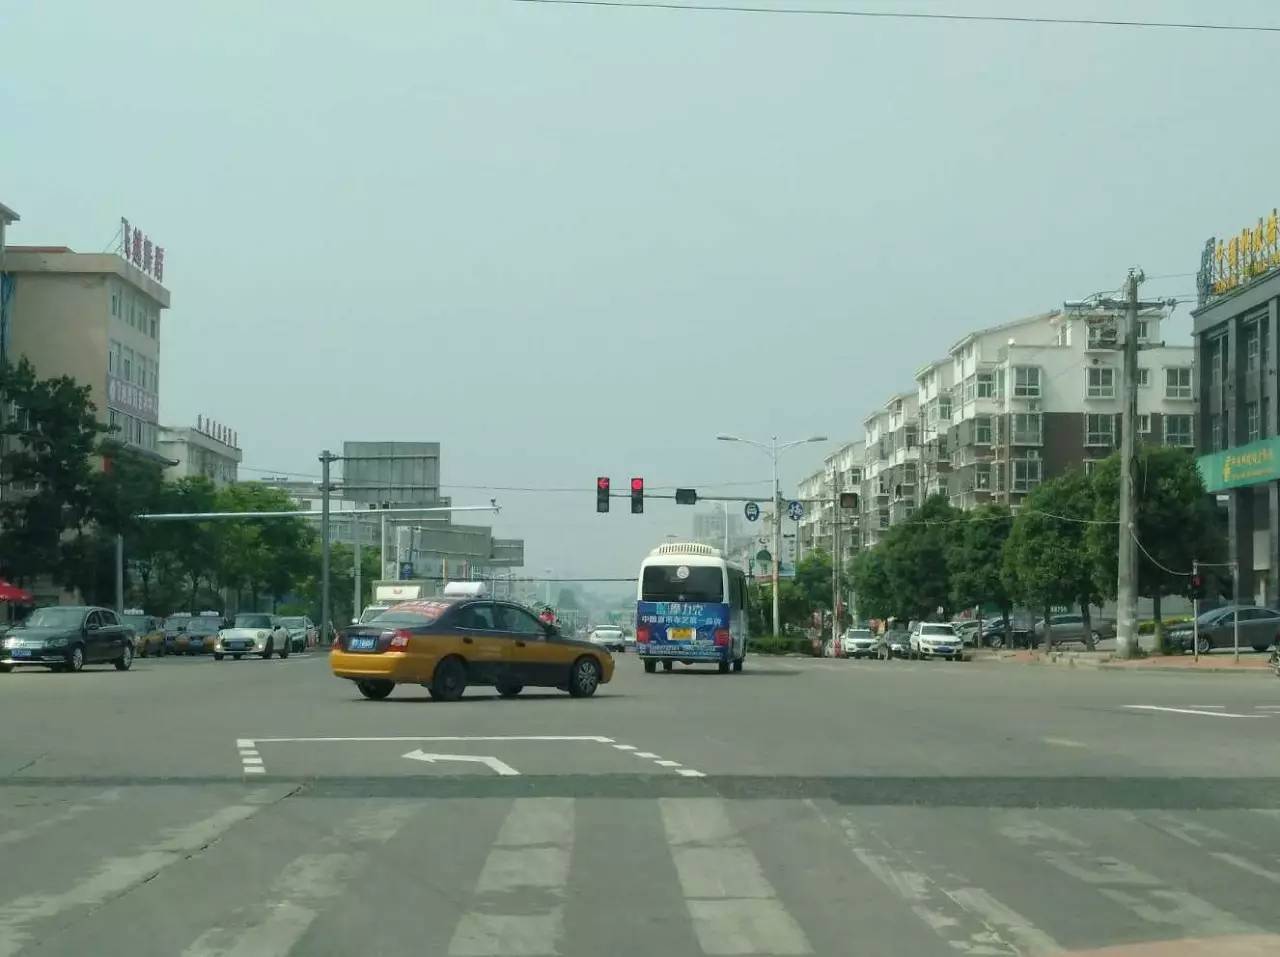 【头条】黄柏山路的"红绿灯"和"左转弯待转区",您看懂了吗?